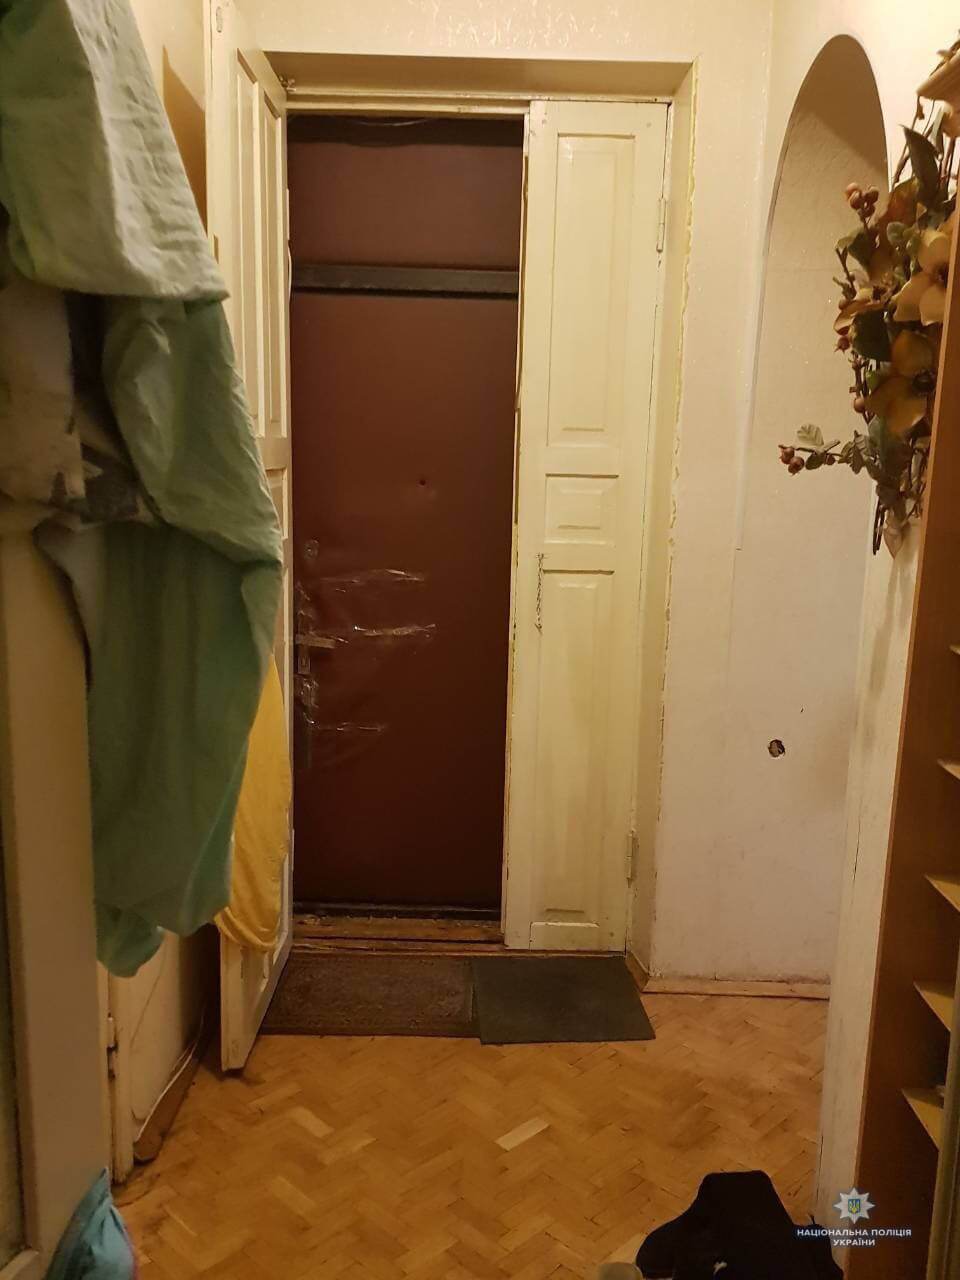 Мать из "ЛНР" бросила ребенка в хостеле Киева на 1,5 месяца